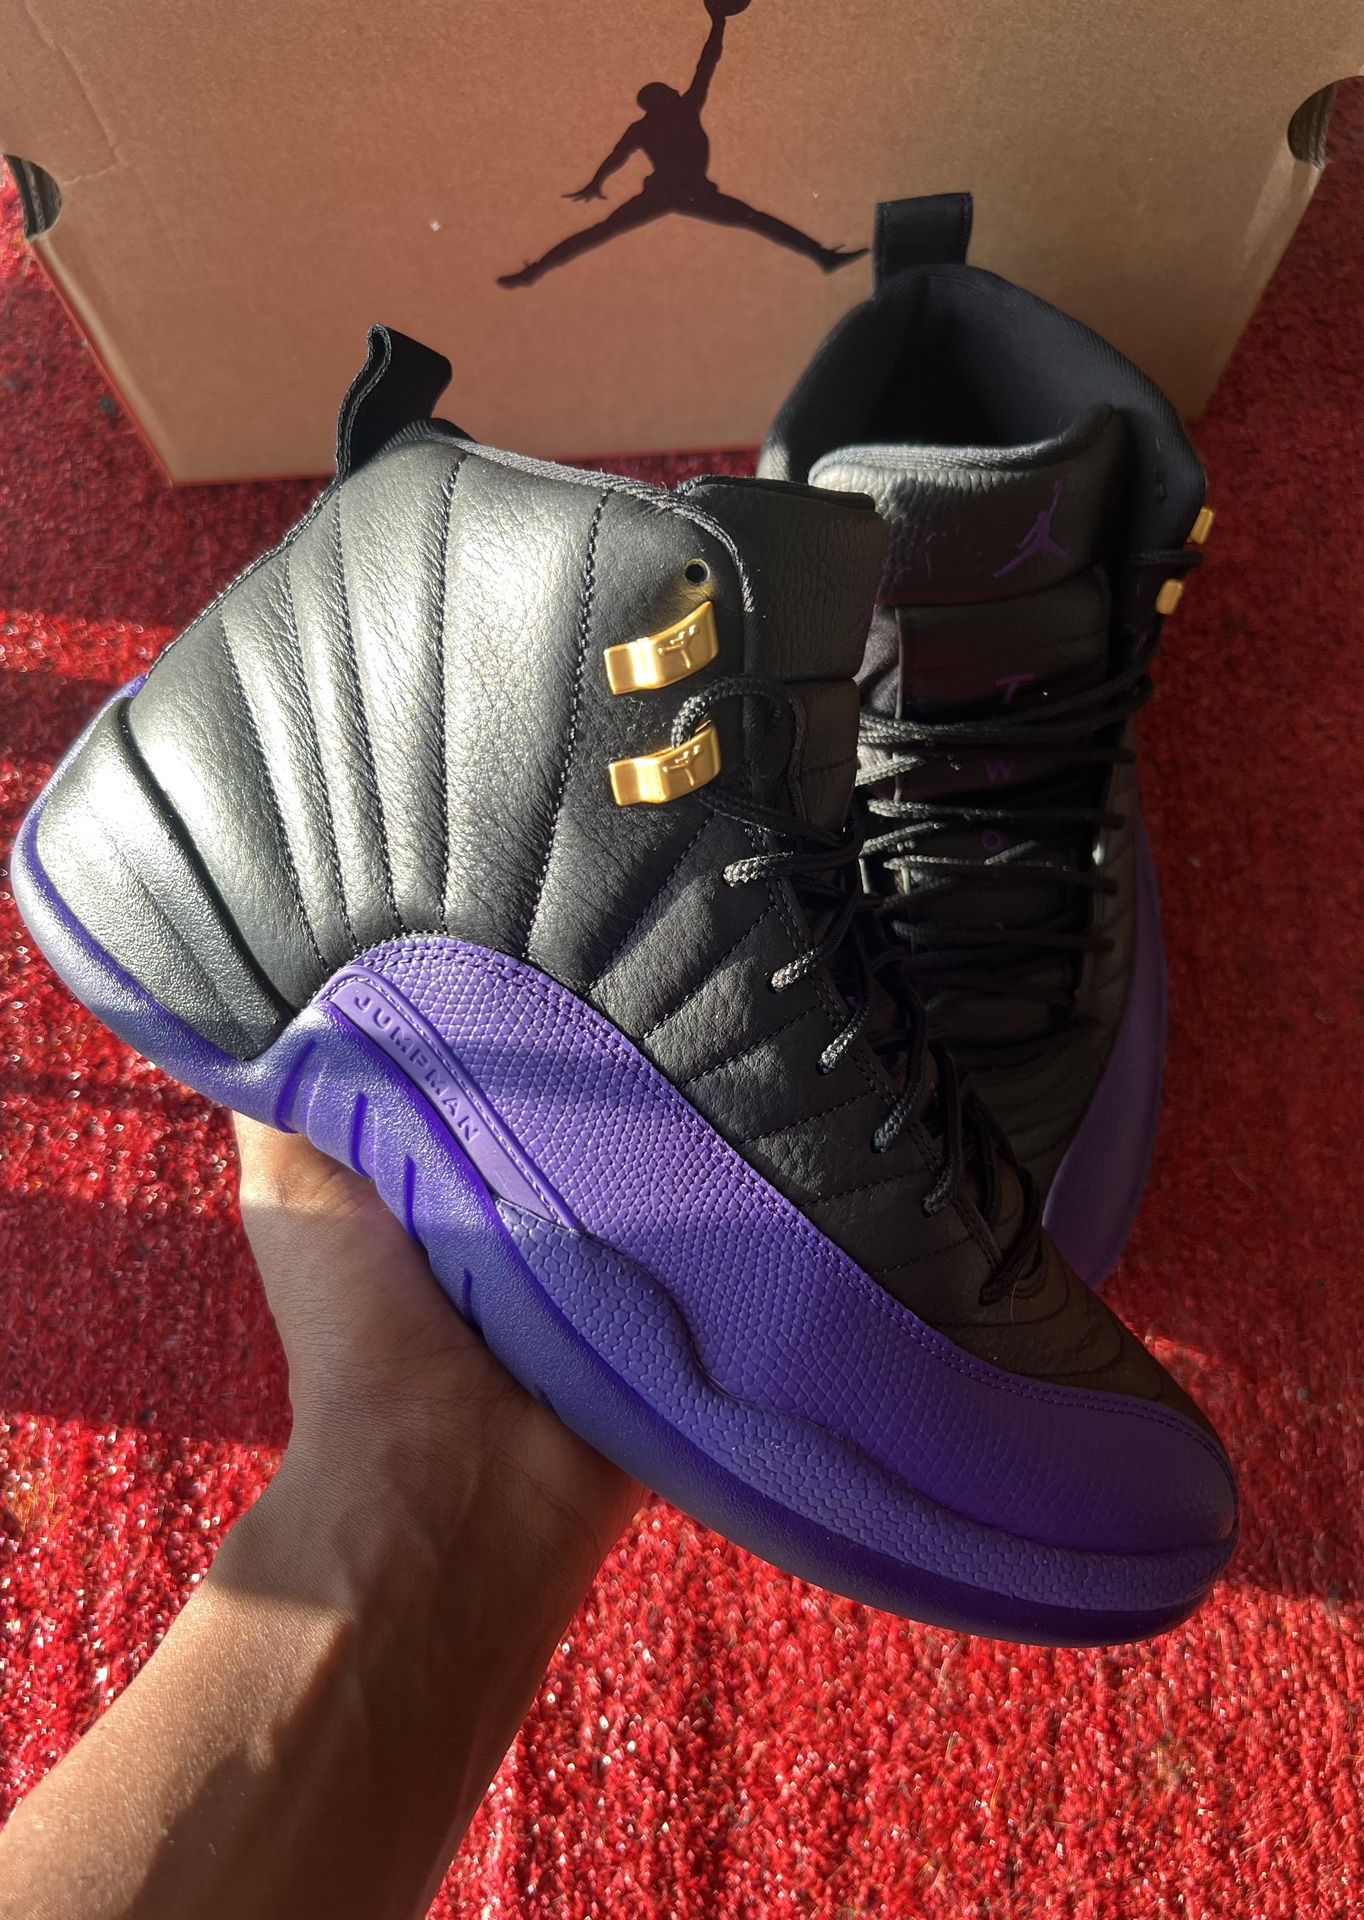 Jordan 12 “Field purple”